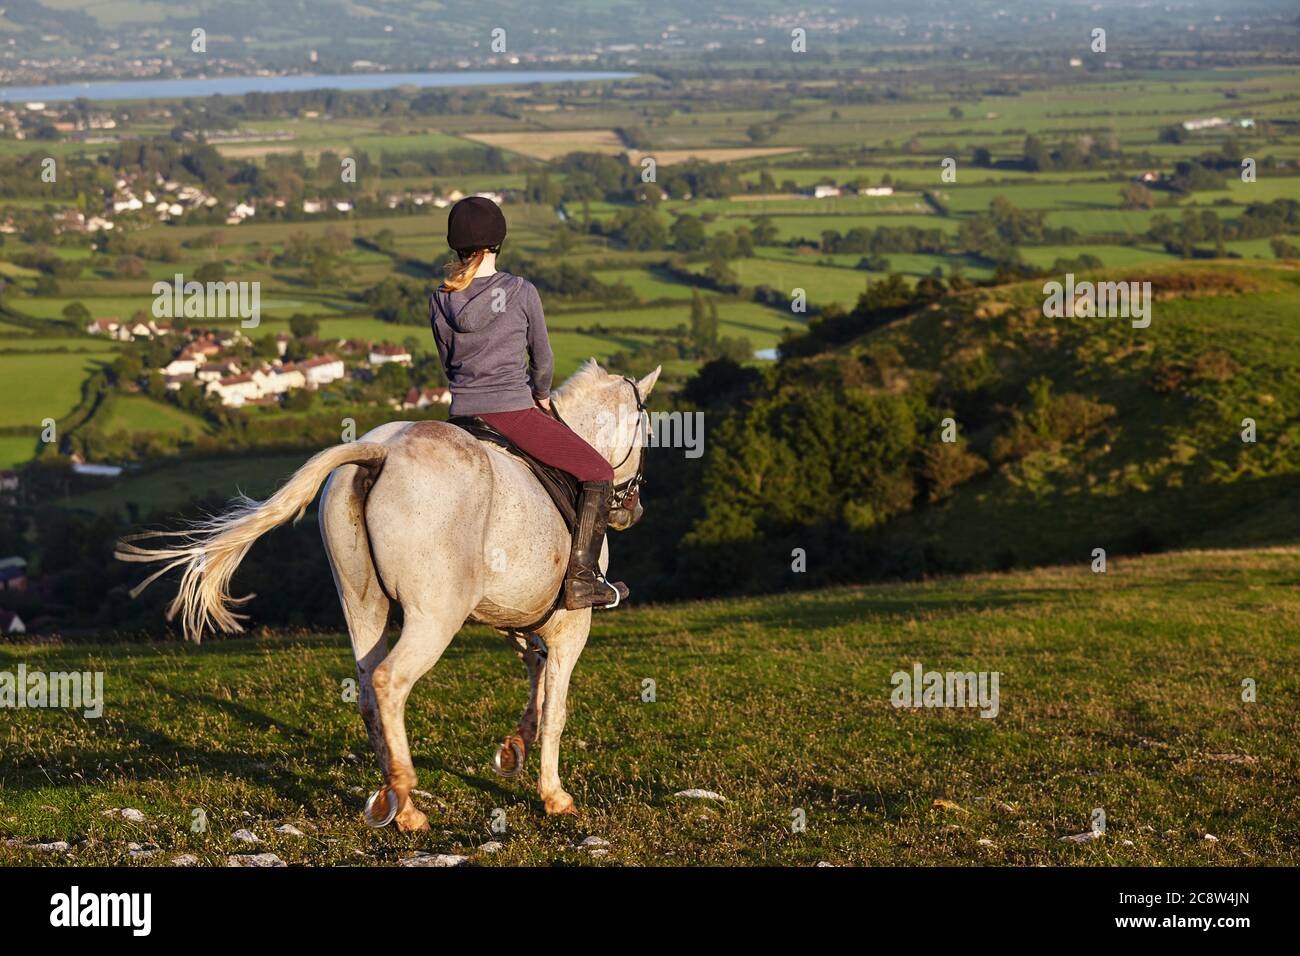 Un cavalier sur Crook Peak, dans les collines de Mendip, avec une vue sur les niveaux de Somerset au-delà, Somerset, Grande-Bretagne. Banque D'Images